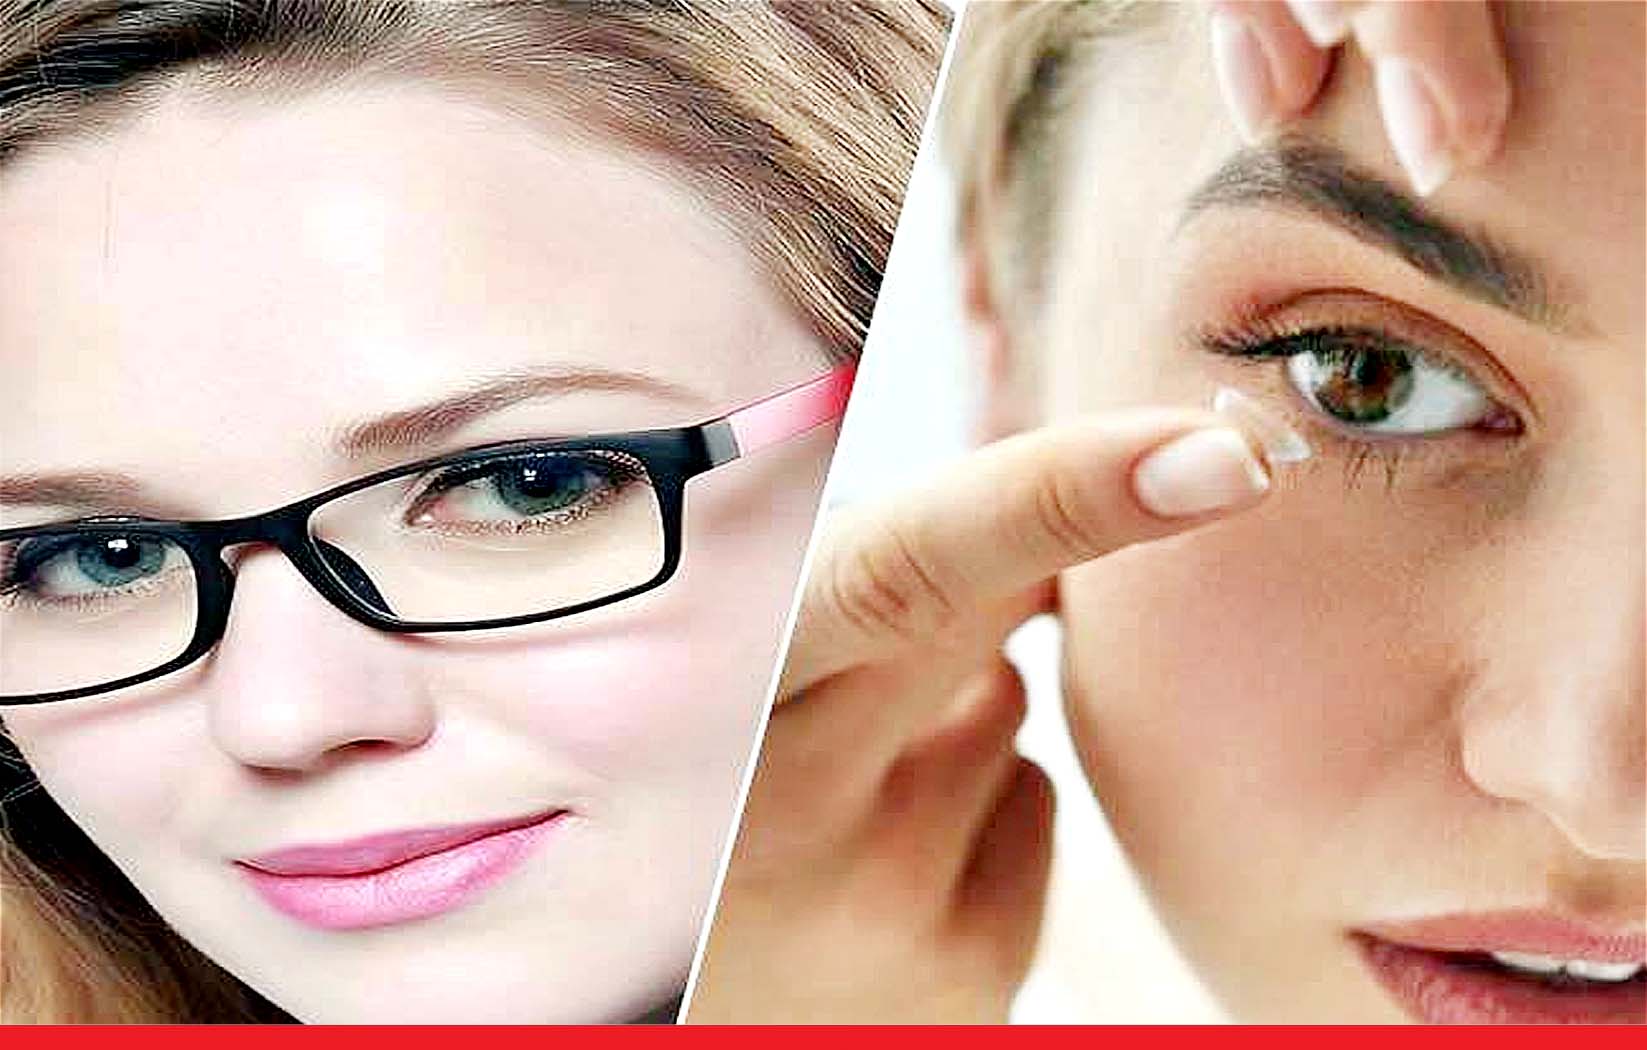 चश्मा पहनें या कॉन्टेक्ट लेंस, जानें दोनों के फायदे और नुकसान